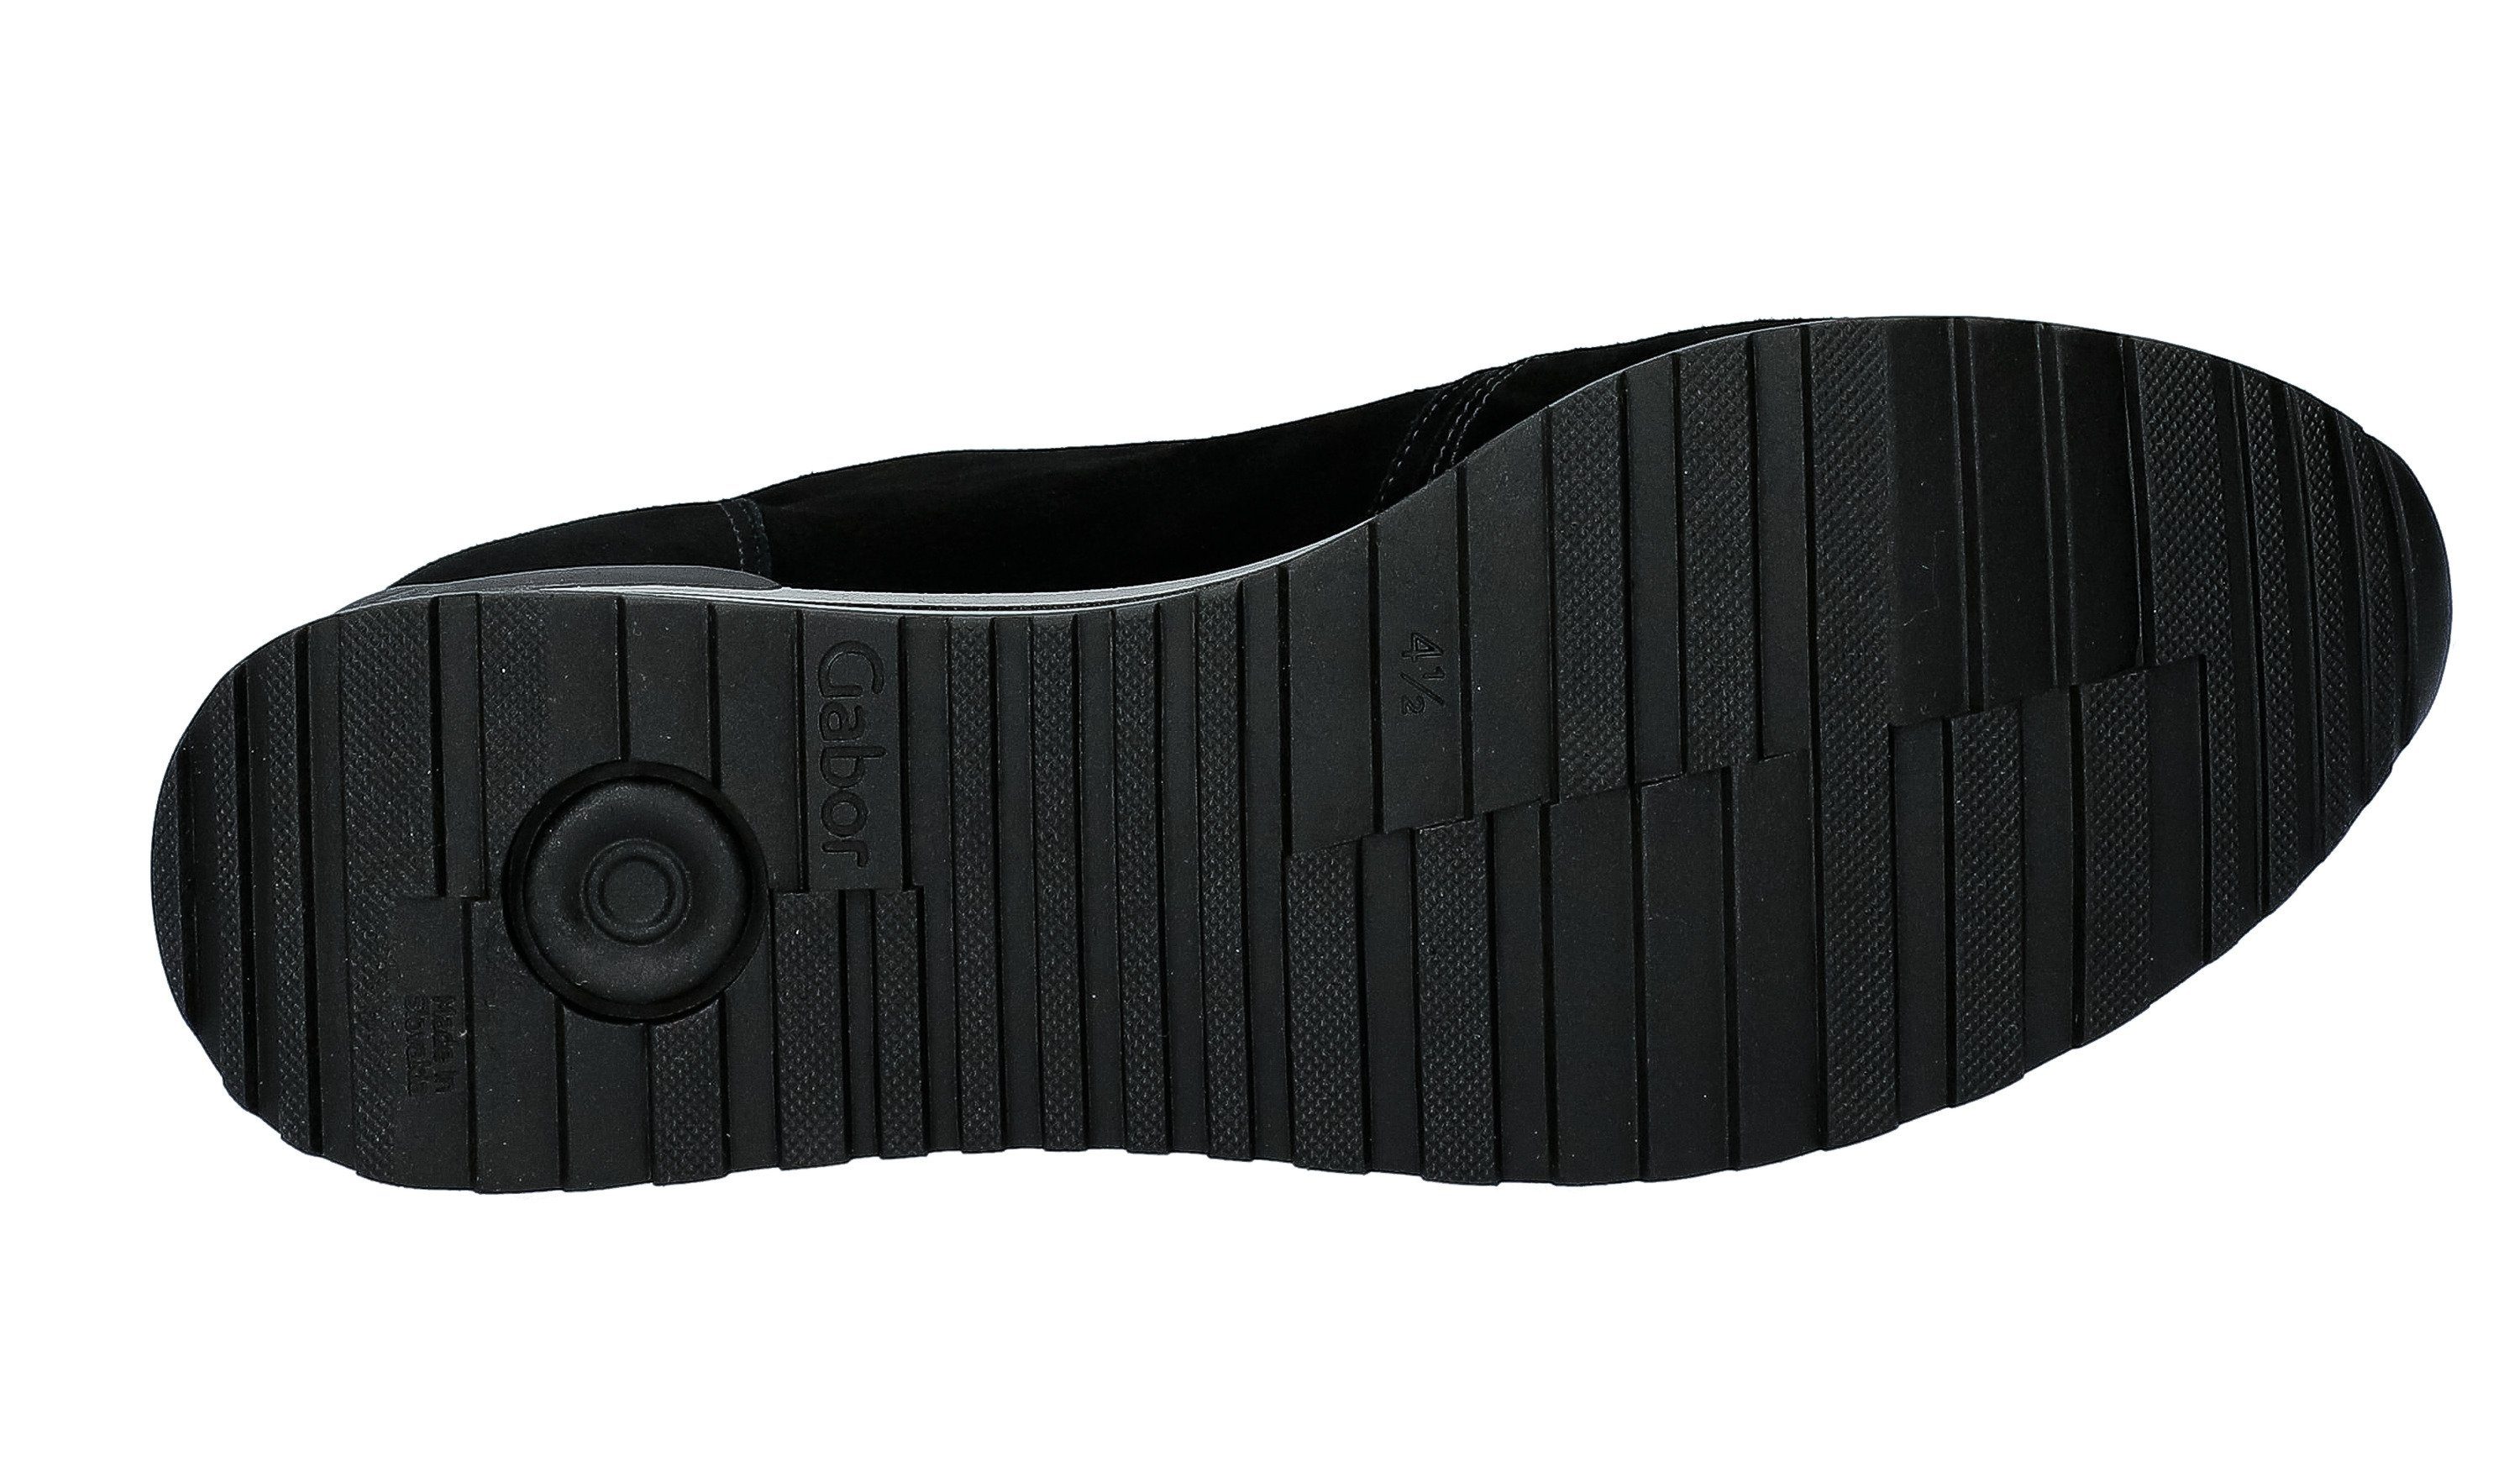 Sneaker Gabor schwarz-bunt-kombiniert-schwarz-bunt-kombiniert Comfort